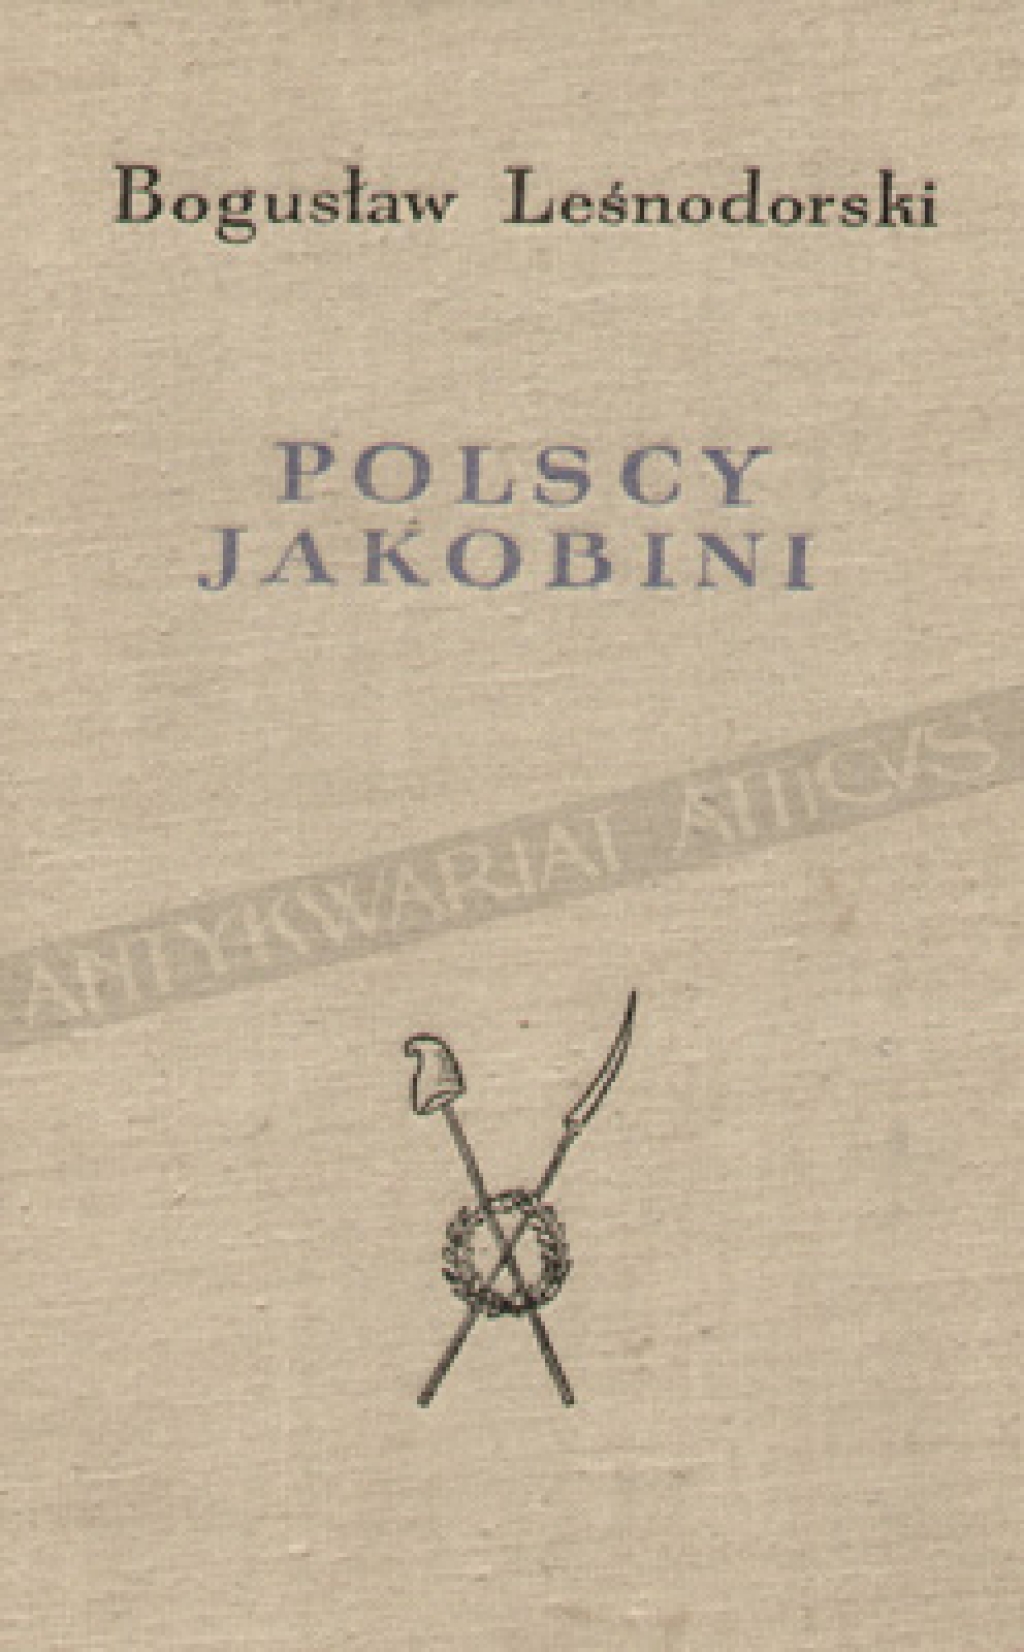 Polscy Jakobini. Karta z dziejów insurekcji 1794 roku